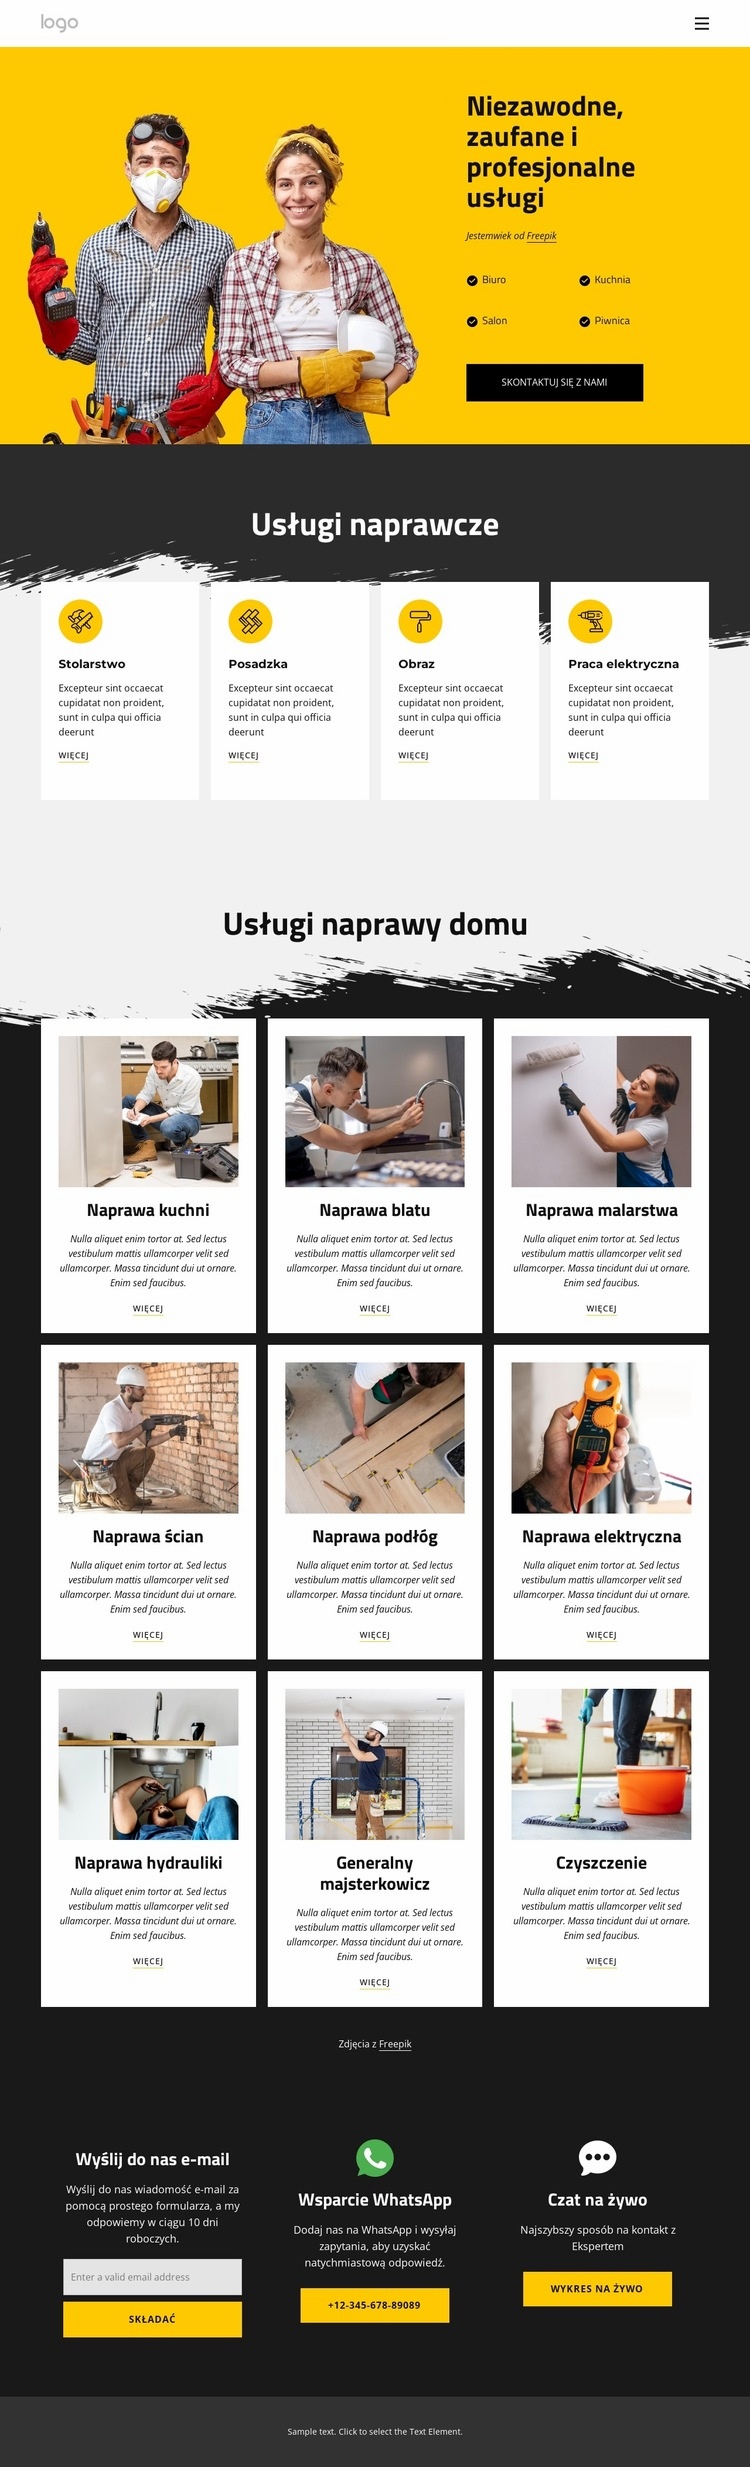 Usługi majsterkowiczów i naprawy domowe Makieta strony internetowej